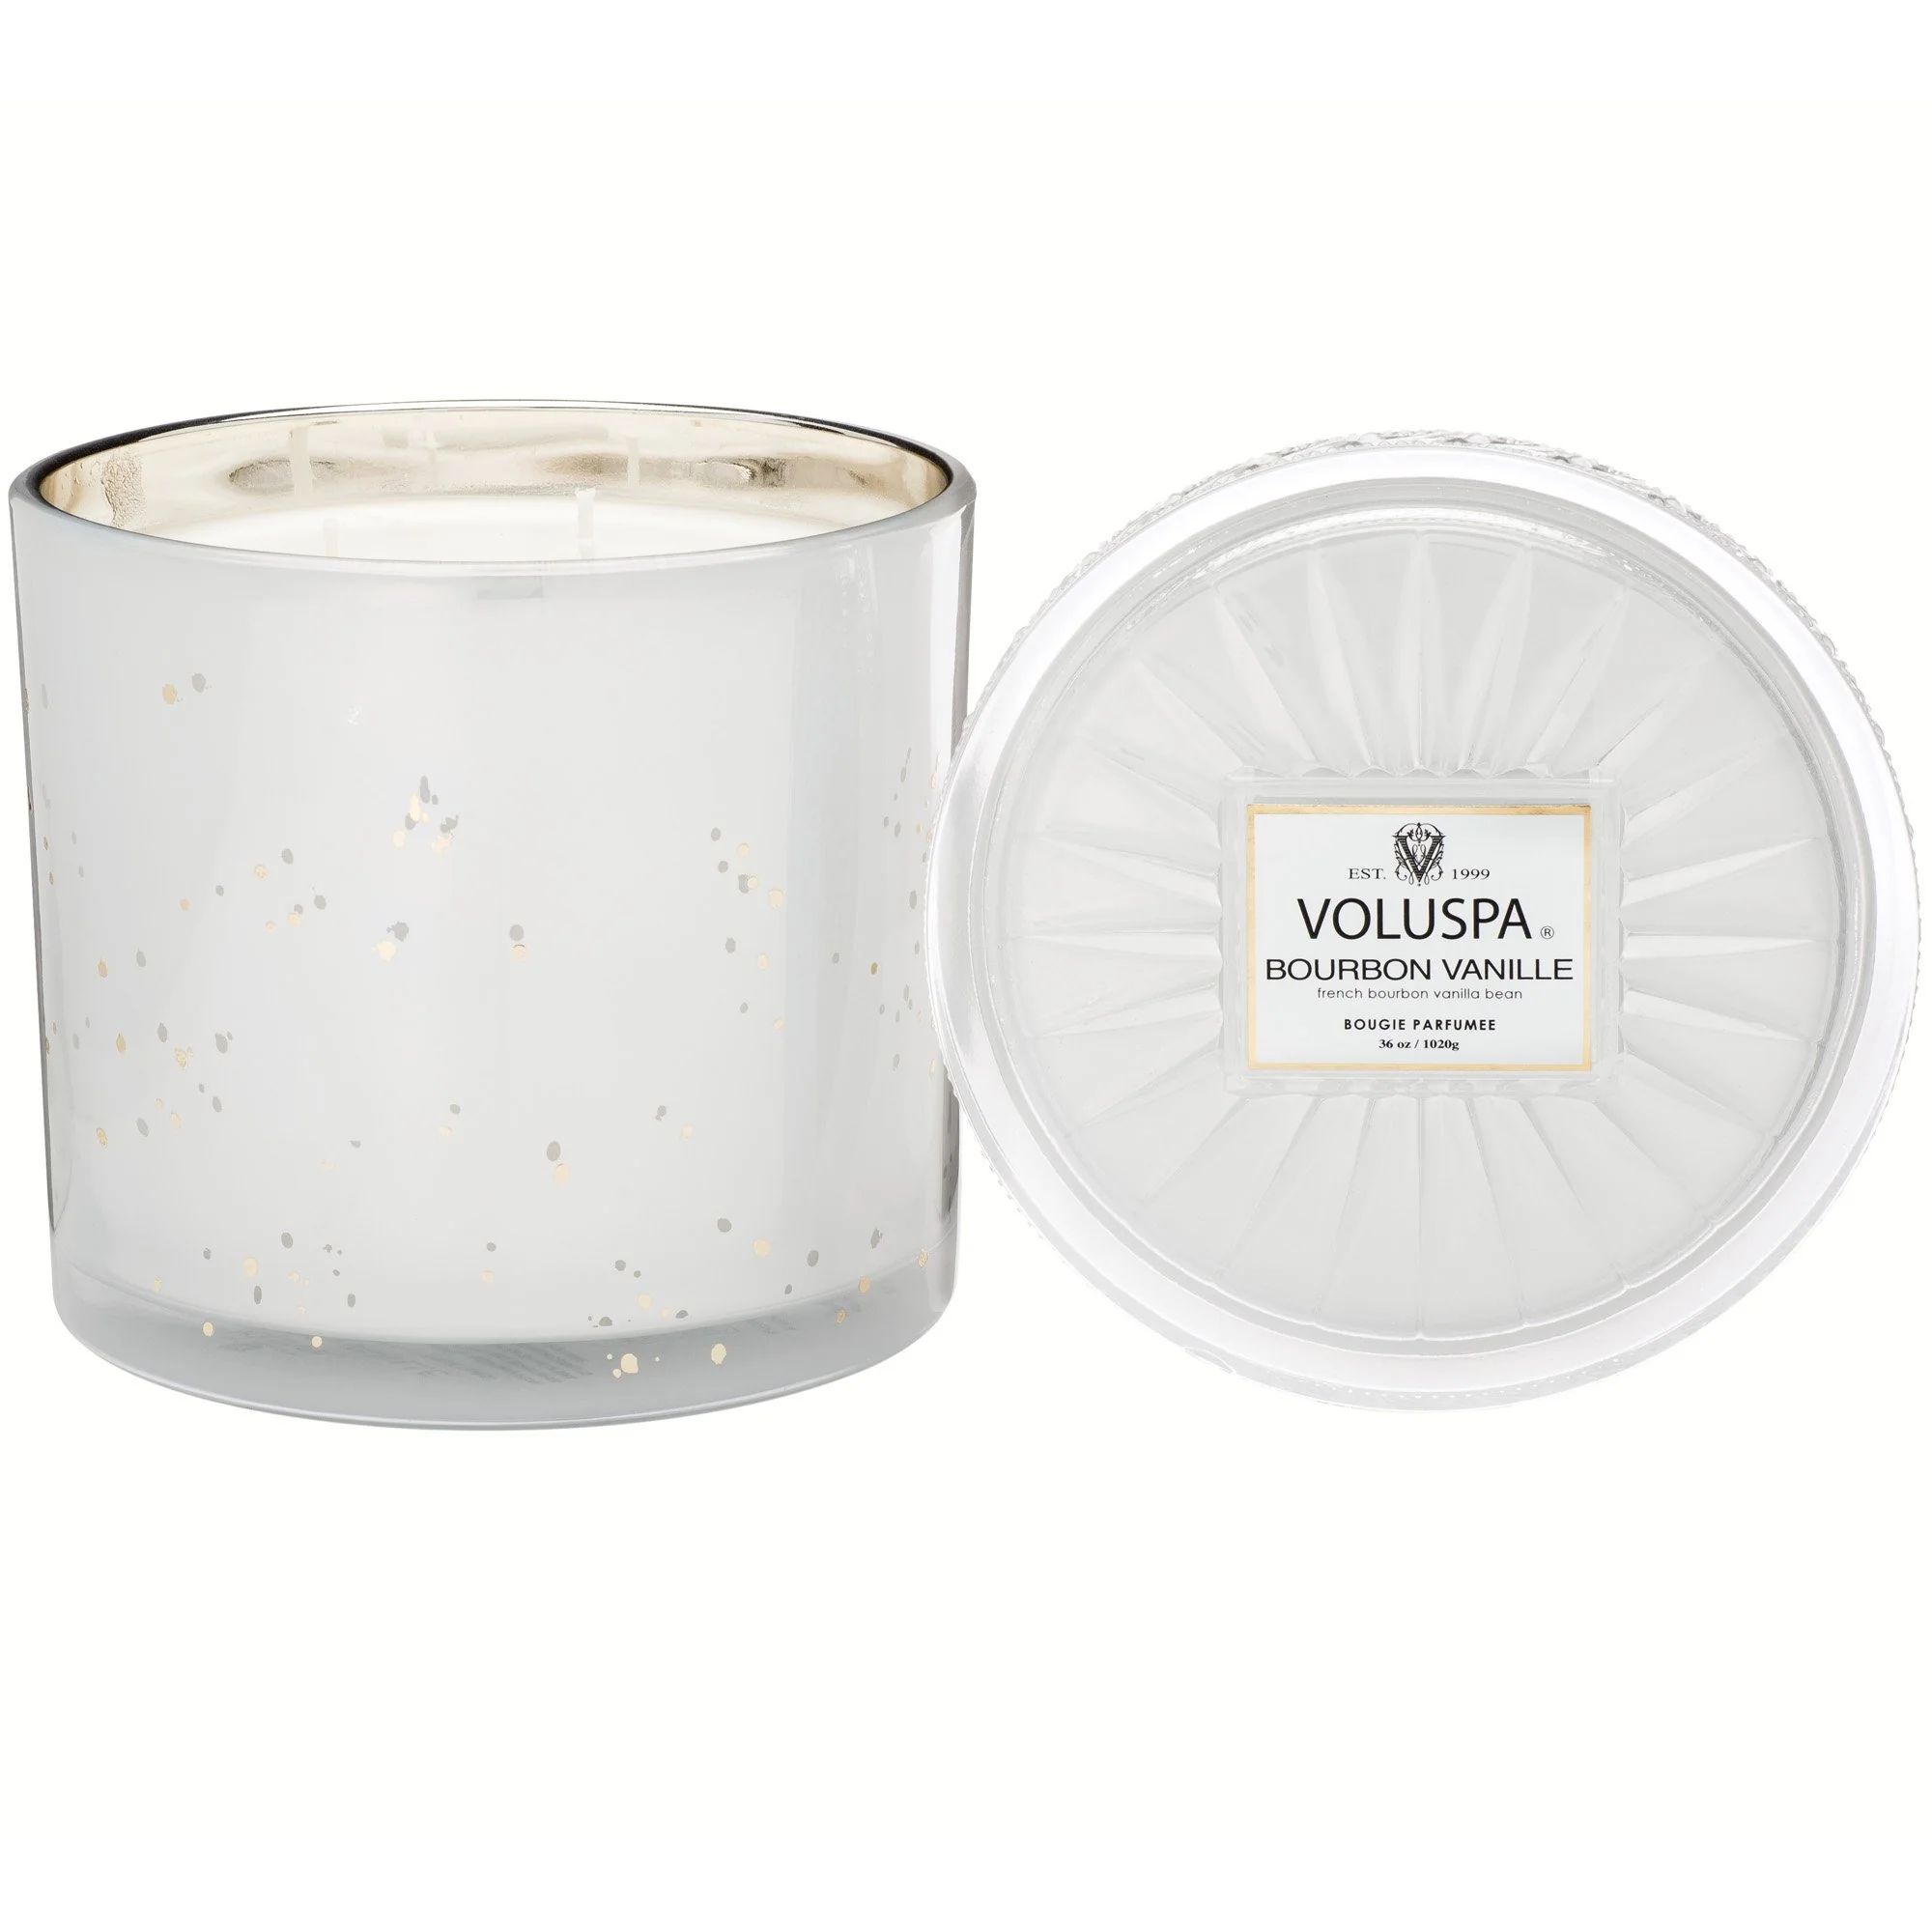 Grande Maison 3 Wick Glass Candle in Bourbon Vanille design by Voluspa | Burke Decor